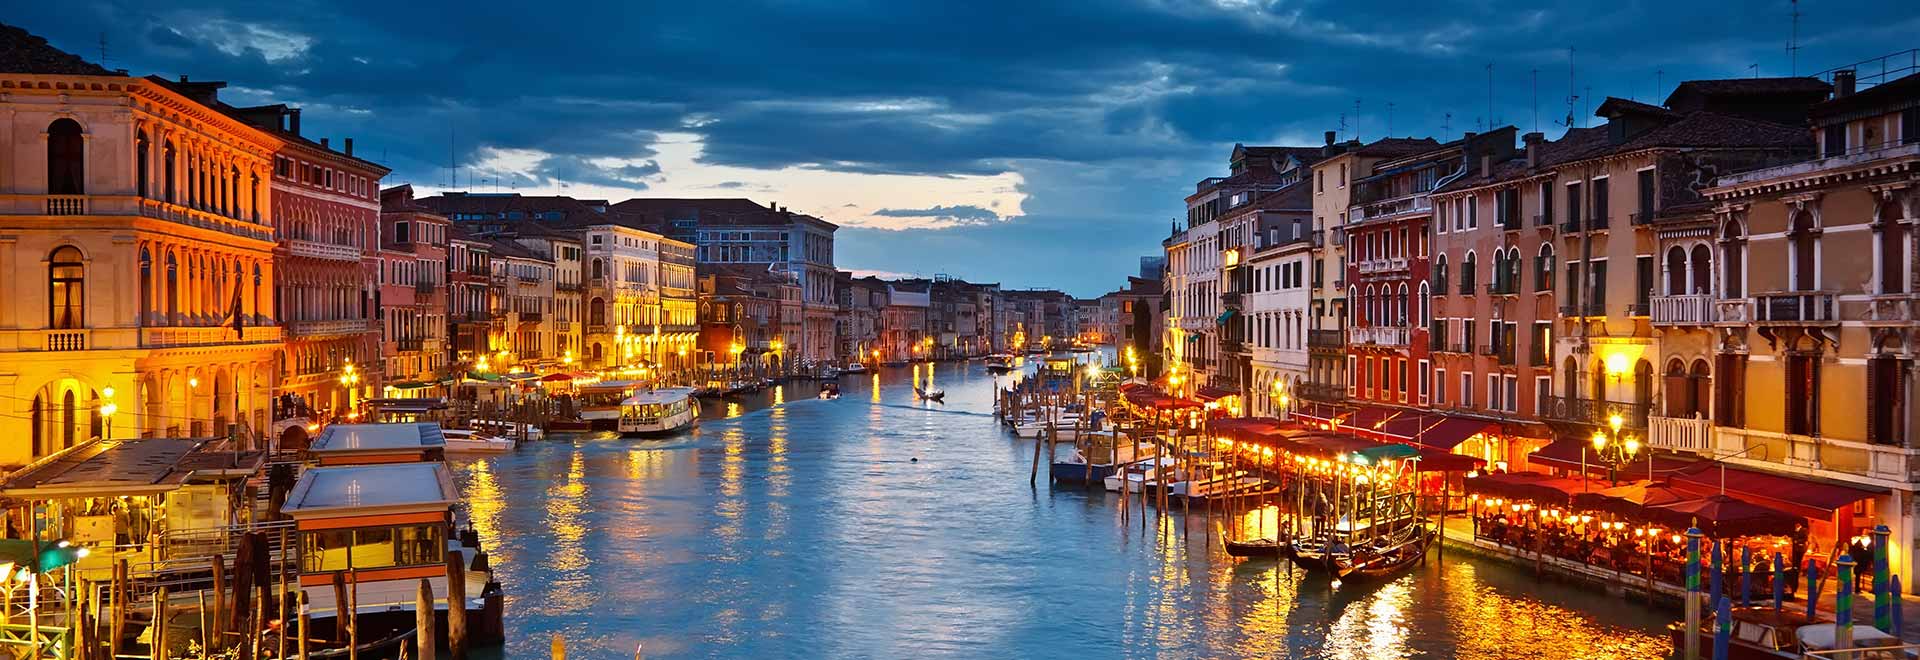 Europe Italy Venice